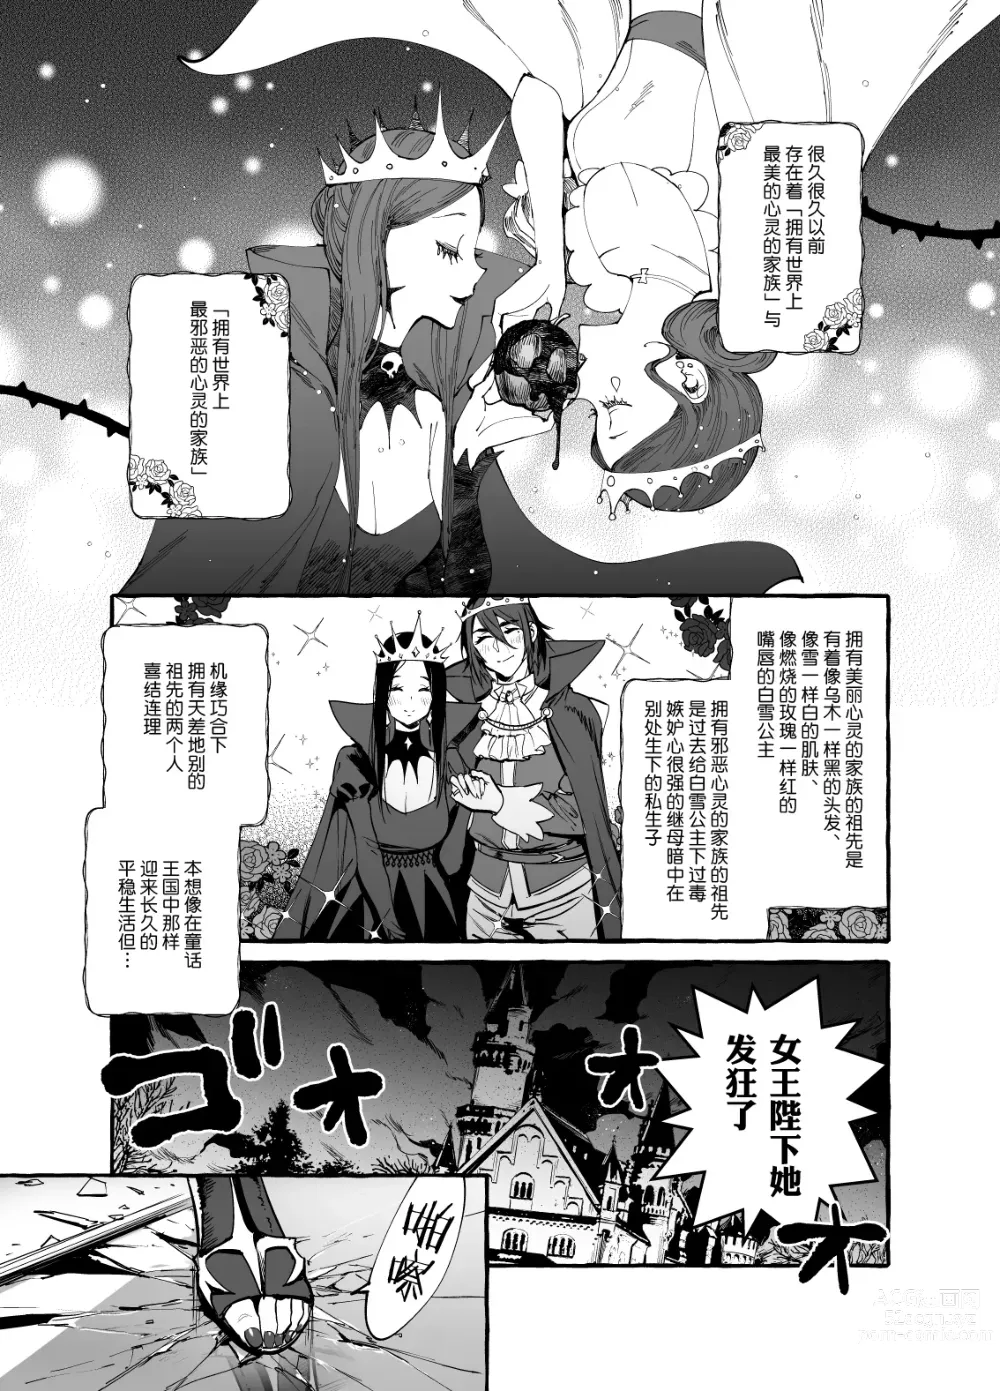 Page 3 of doujinshi Shirayuki Ou to Shichinin no Yaro-domo